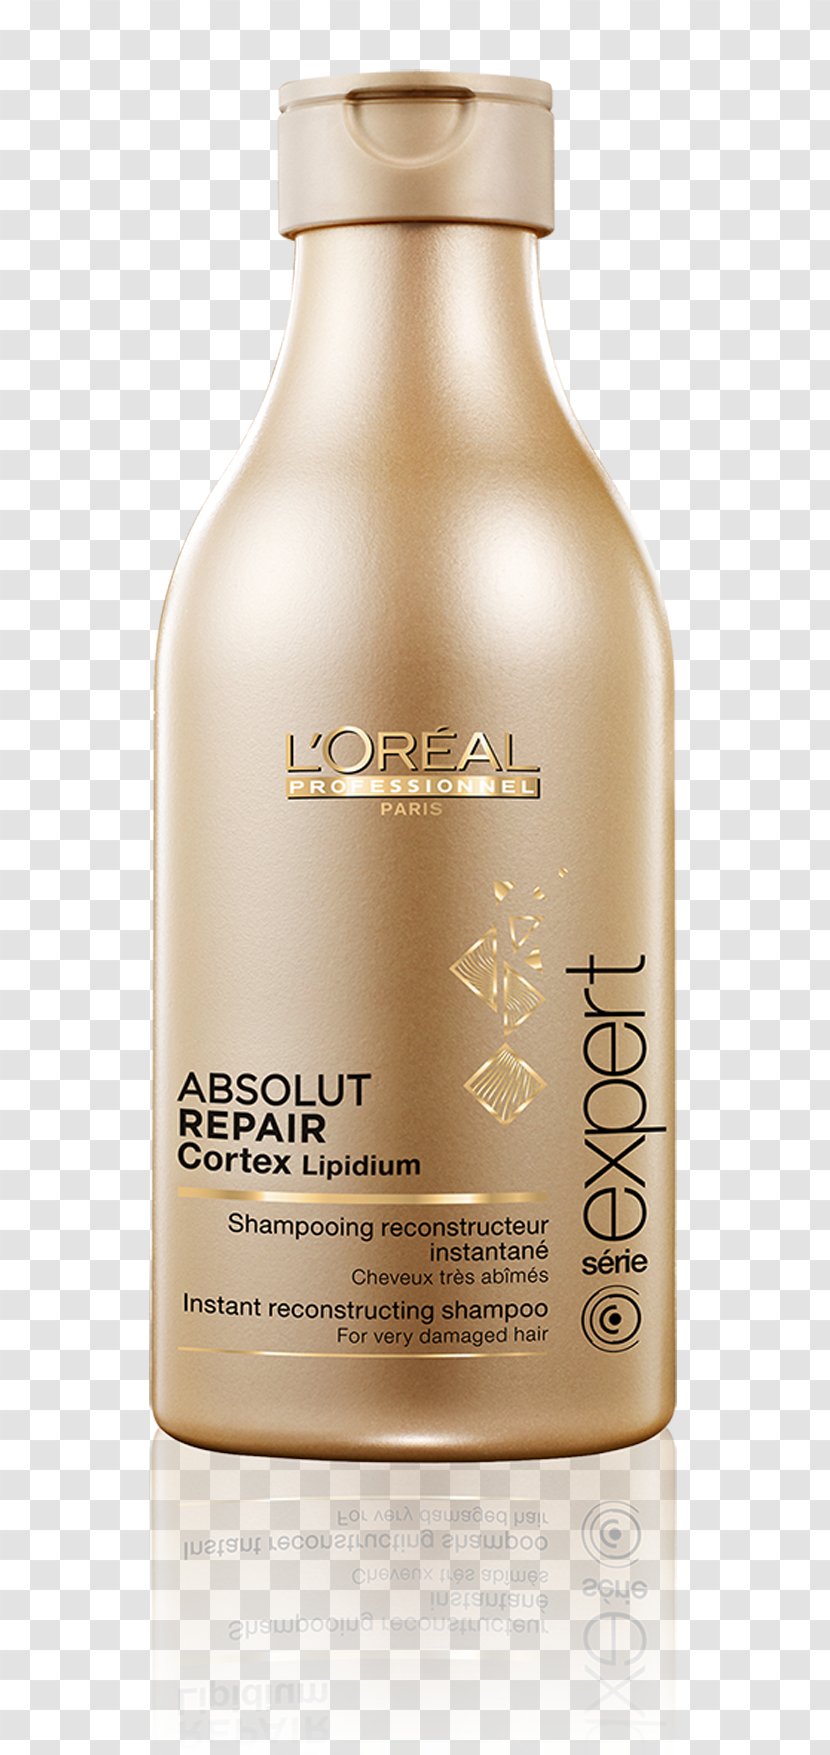 L'Oréal Professionnel Série Expert ABSOLUT REPAIR LIPIDIUM Shampoo Hair Care - Lotion Transparent PNG